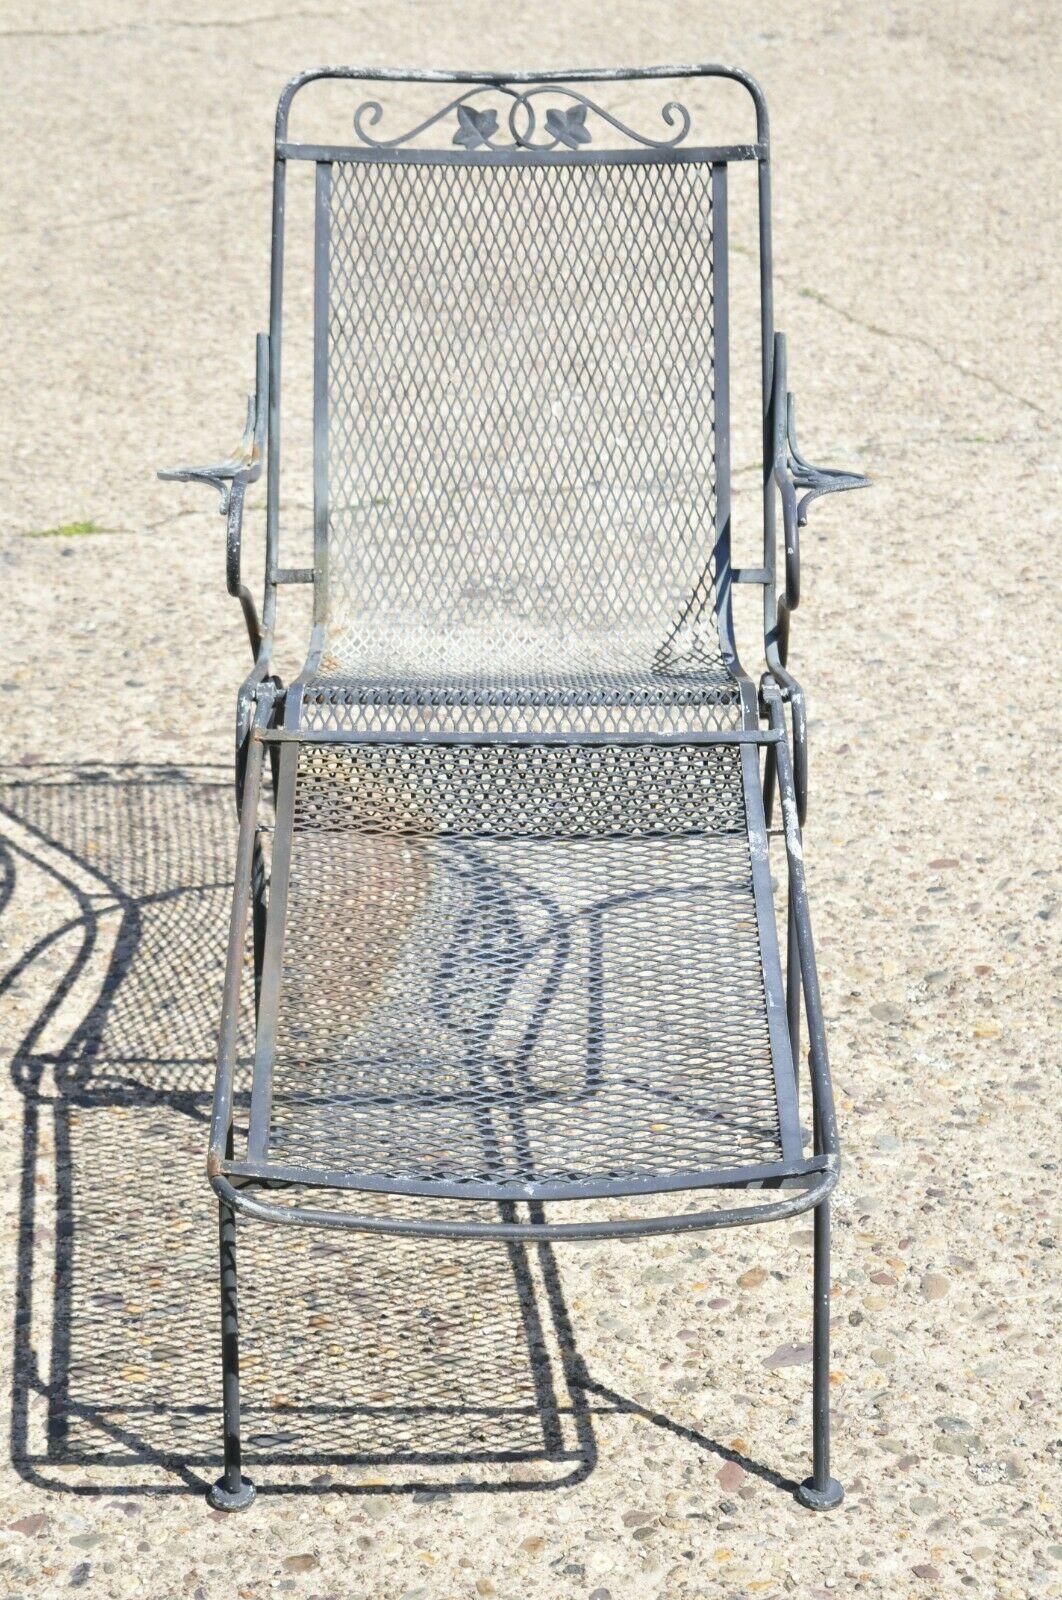 Vintage Woodard Wrought Iron Garden Patio Lounge Chair mit abnehmbarem Ottoman. Schmiedeeiserner Rahmen, abnehmbare Fußstütze, Sitz und Rückenlehne aus perforiertem Netz, zweiteilige Konstruktion, sehr schönes Vintage-Set, hochwertige amerikanische